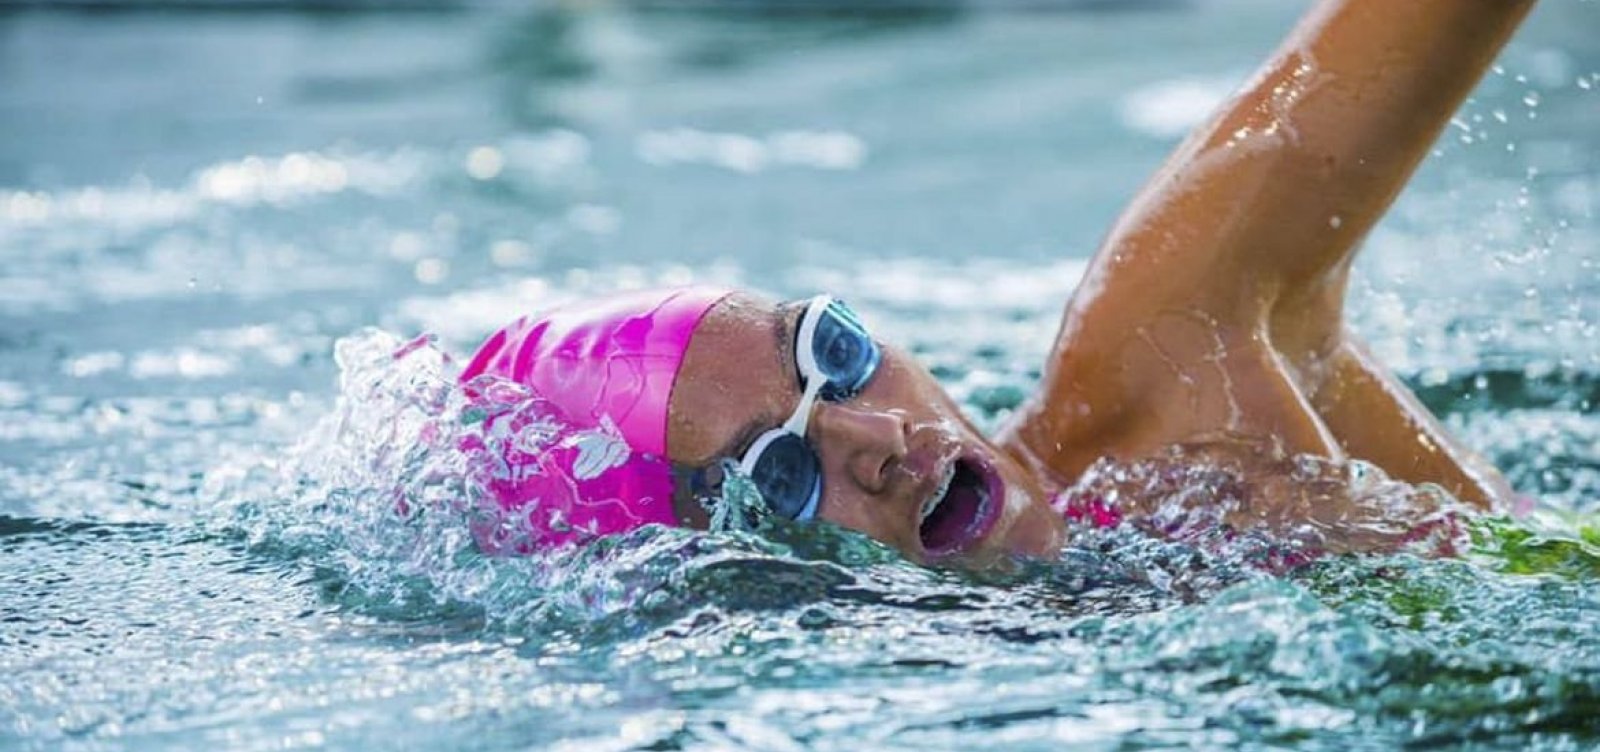 Nadadora brasileira entra para o livro dos recordes após nadar por 30 horas sem parar